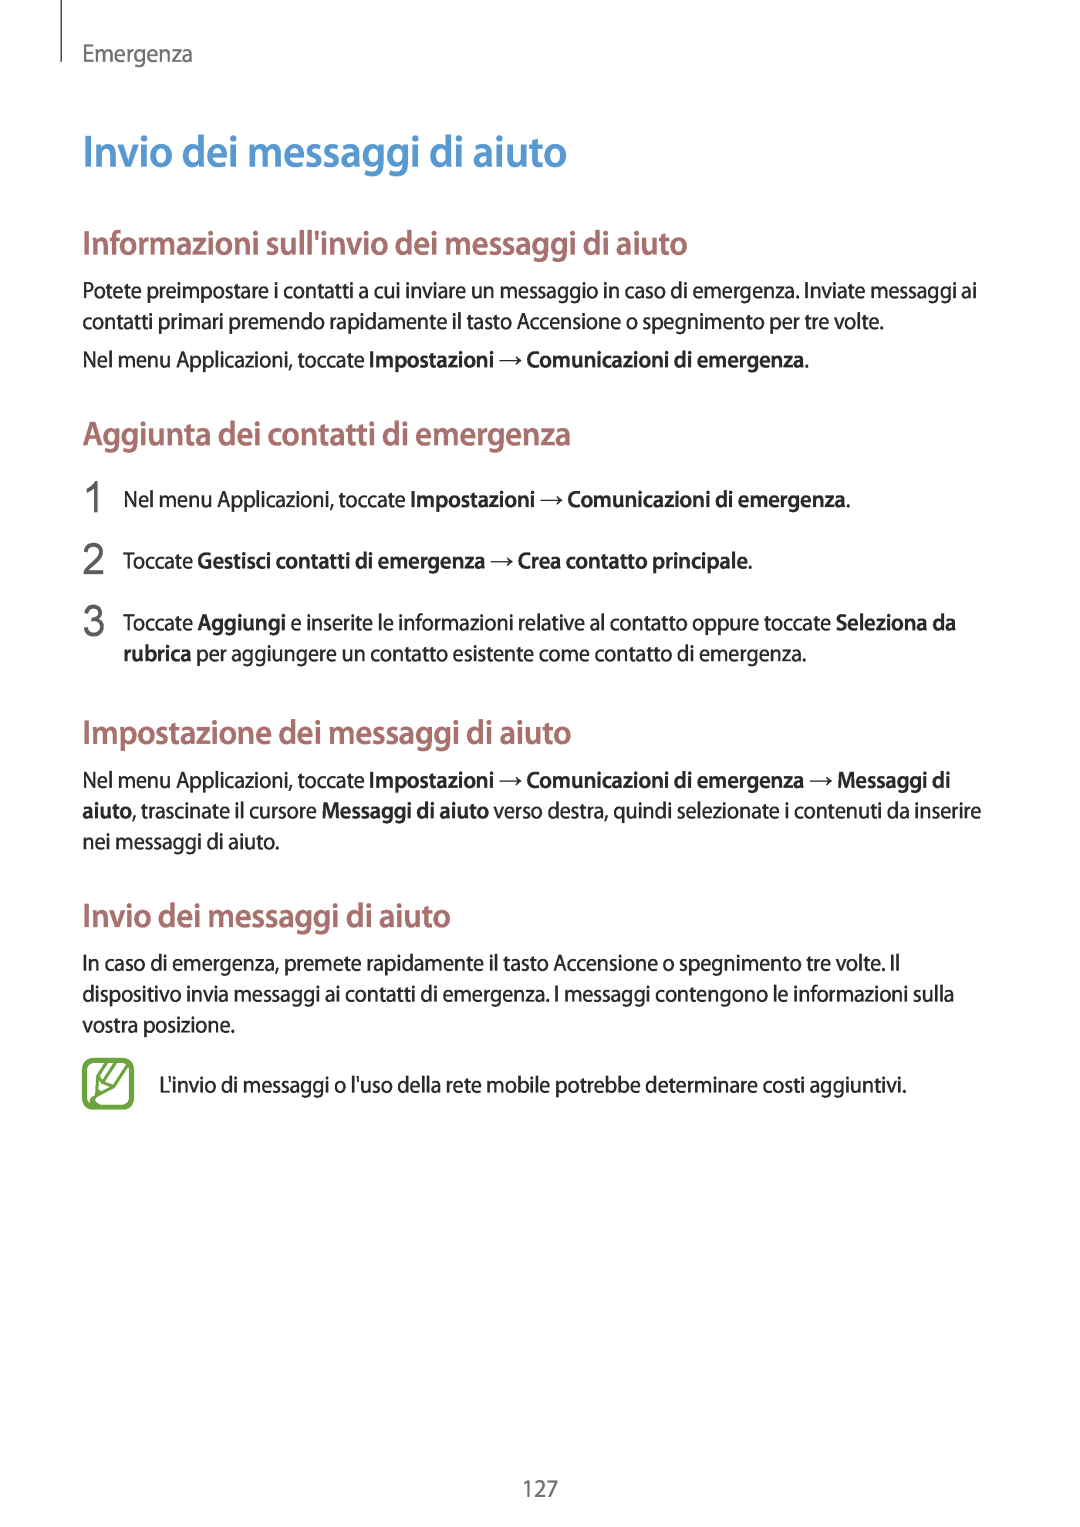 Samsung SM-G900FZWAATO manual Invio dei messaggi di aiuto, Informazioni sullinvio dei messaggi di aiuto, Emergenza 